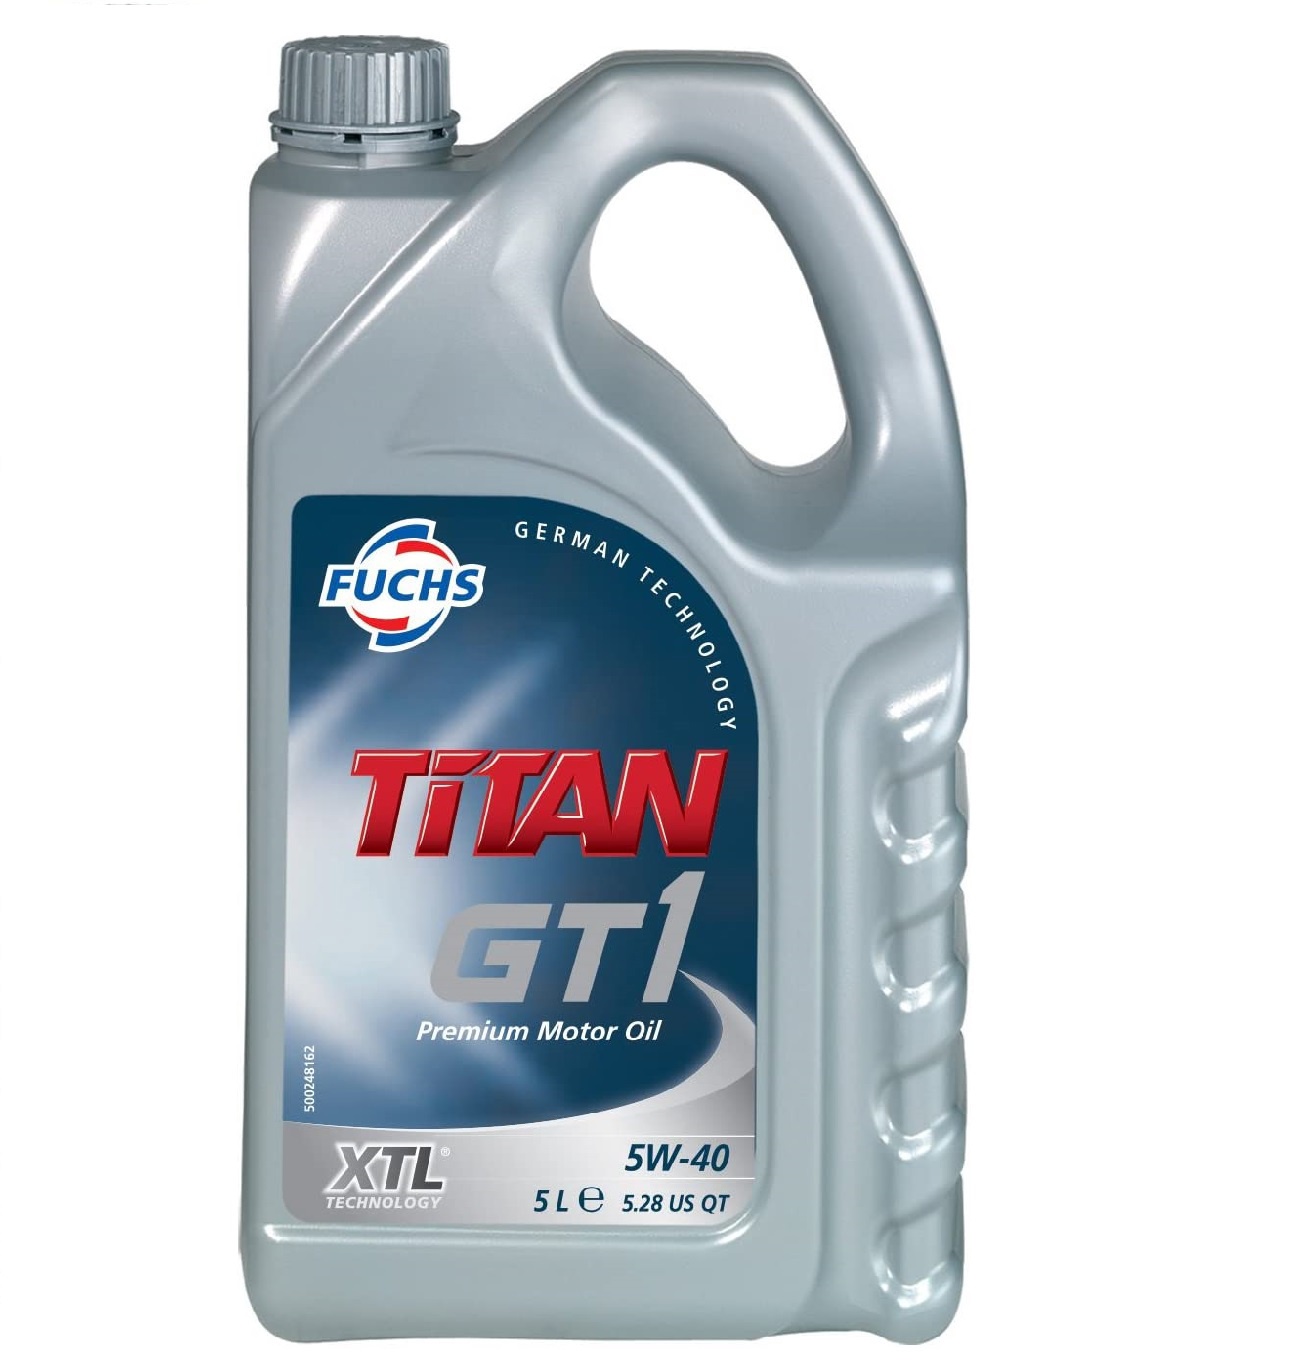 Titan Gt1 5W-40 - Xtl 1Ltr